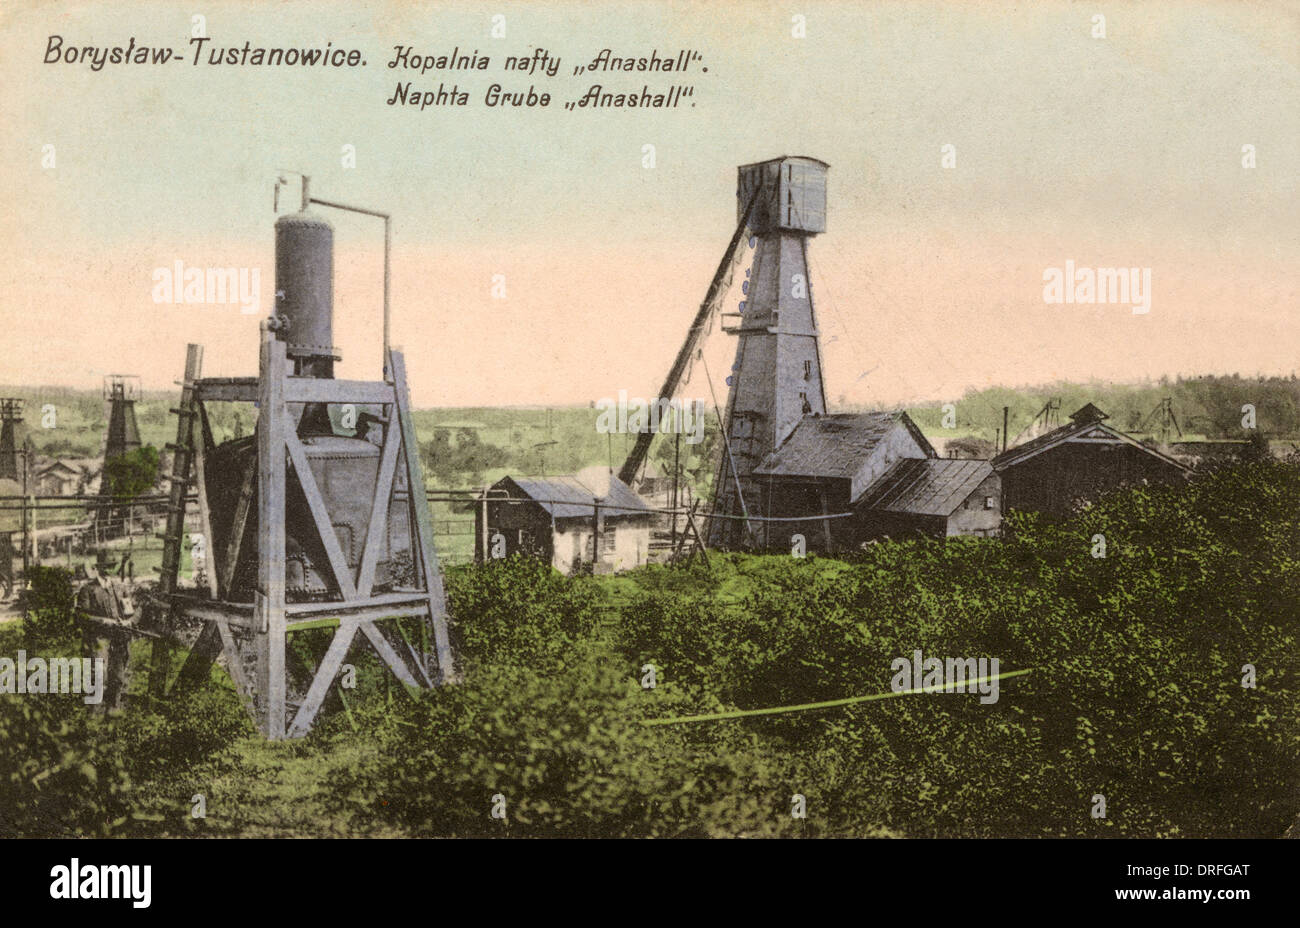 Tustanowice, Borislav, Ukraine - Naphta wells Stock Photo